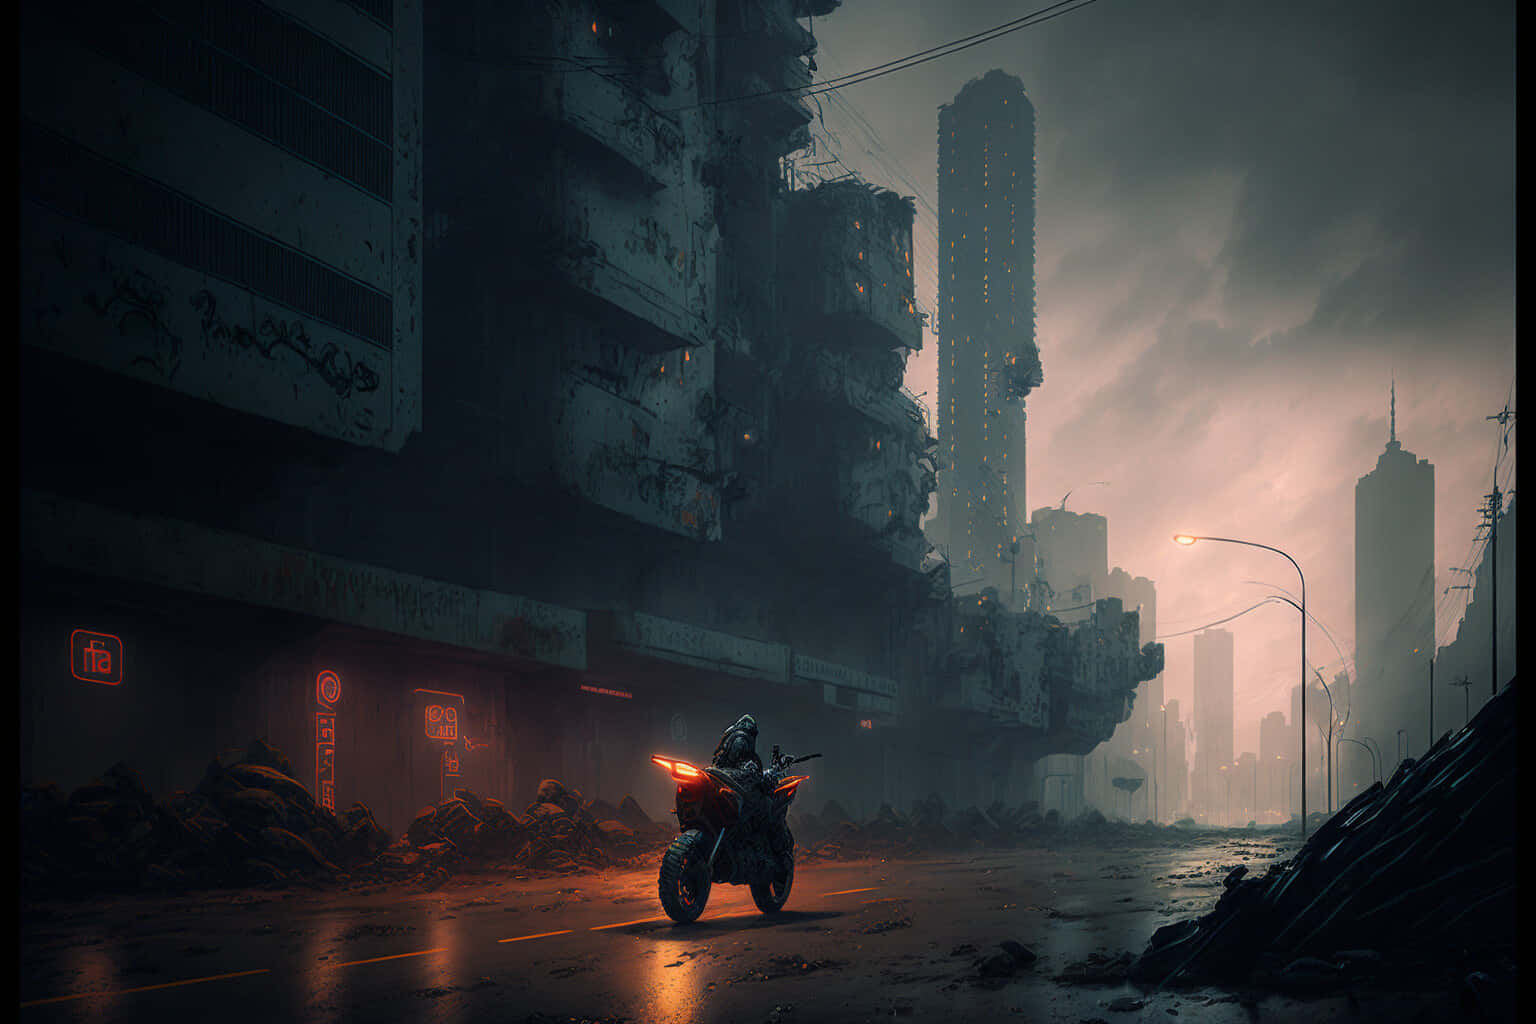 A Glimpse into the Dark Cyberpunk City Wallpaper